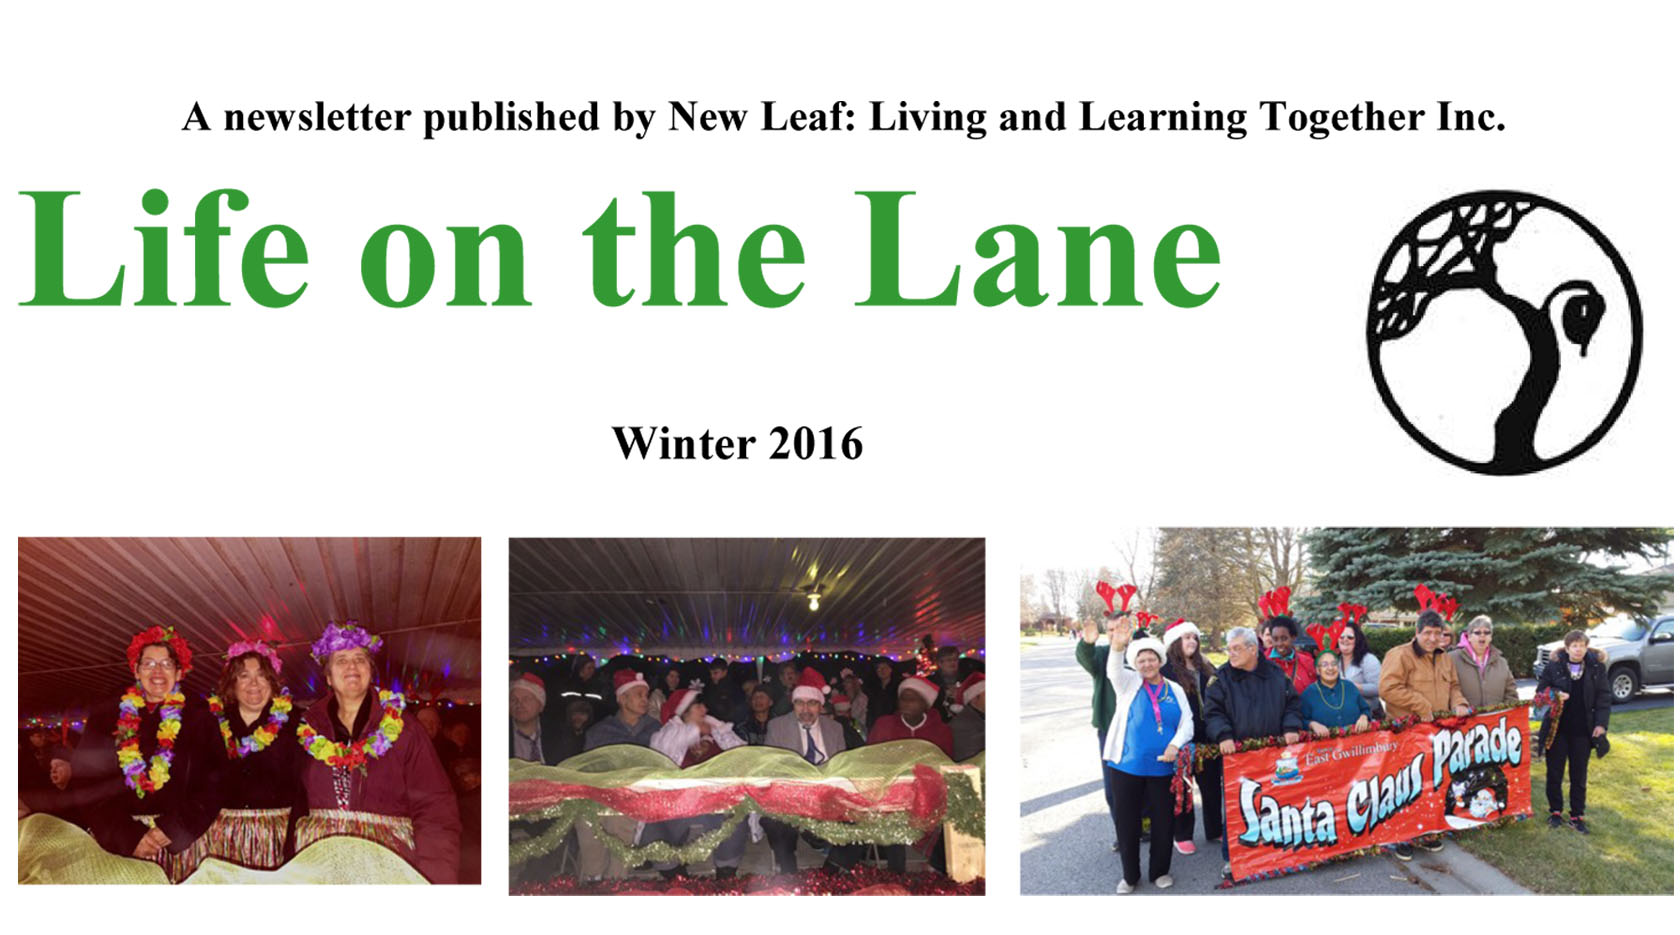 Winter 2016 Newsletter